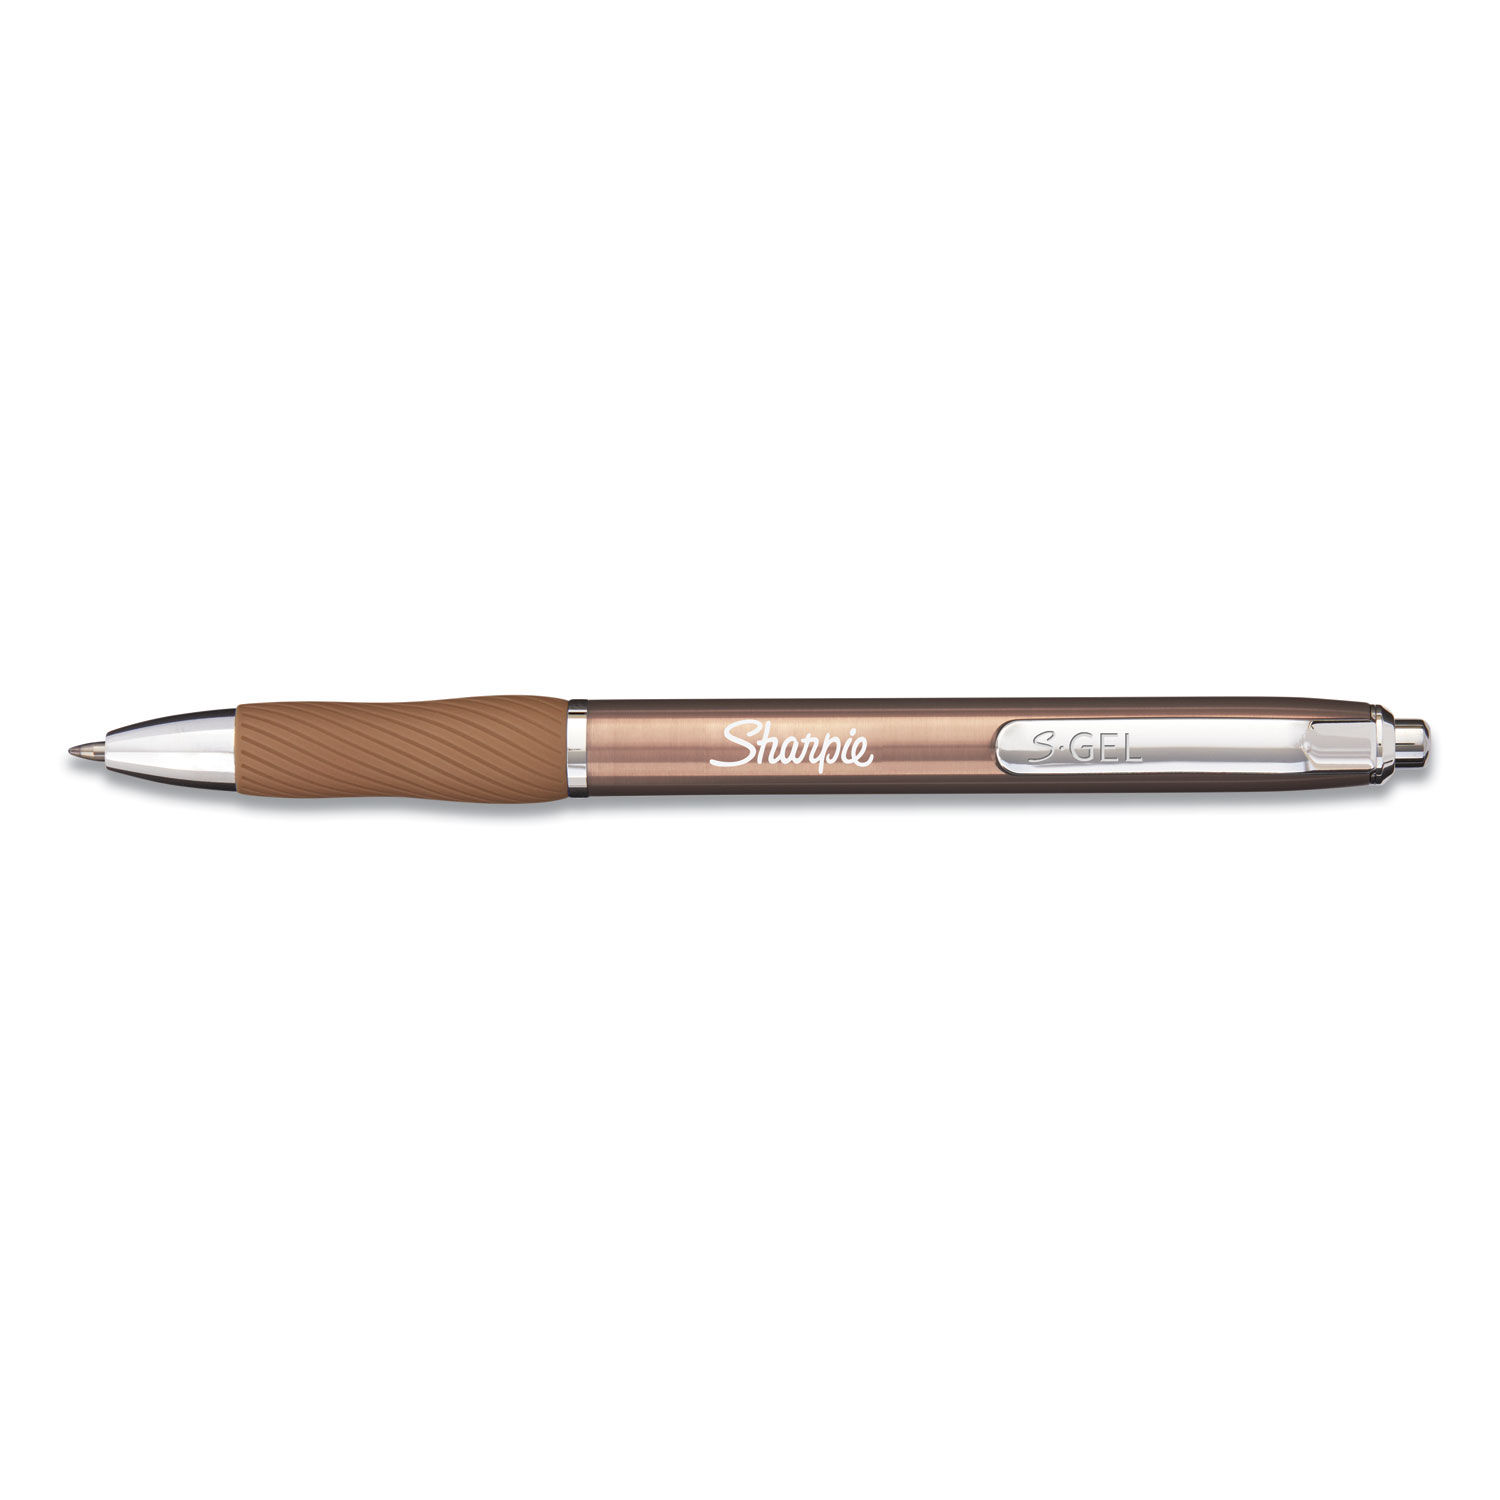 Sharpie S-gel 2pk Black Ink Gel Pens 0.7mm Medium Tip - Gold Metal